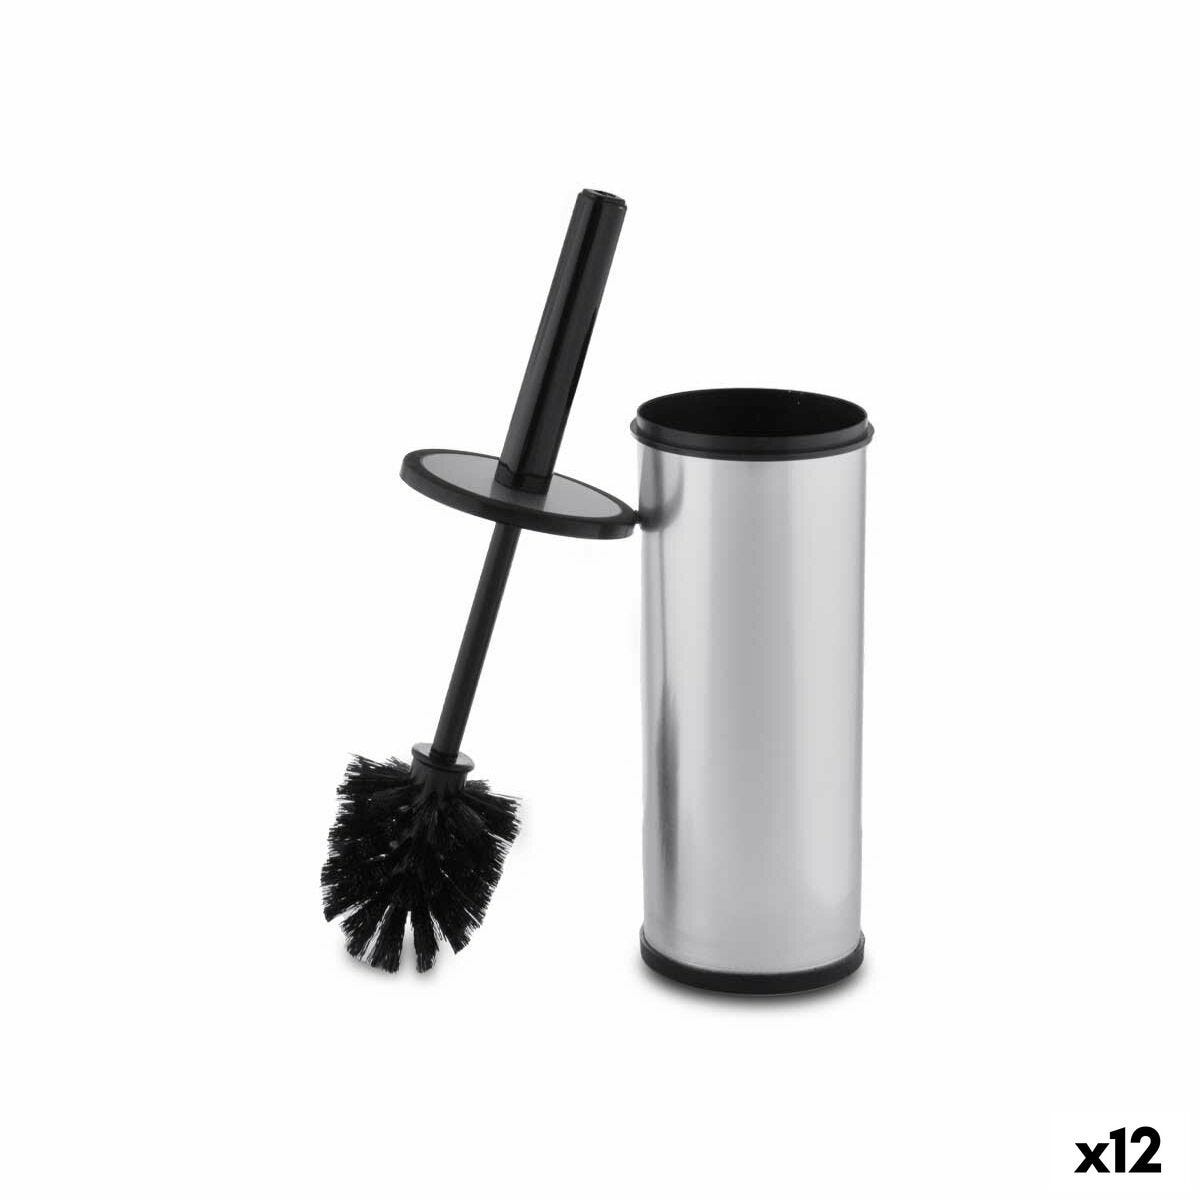 Set 80 Cepillo Recambio Escobilla Baño 9x8 cm, Repuesto Cabezal Limpiador WC  Rosca 12 mm, Higiénico, Plástico, Negro